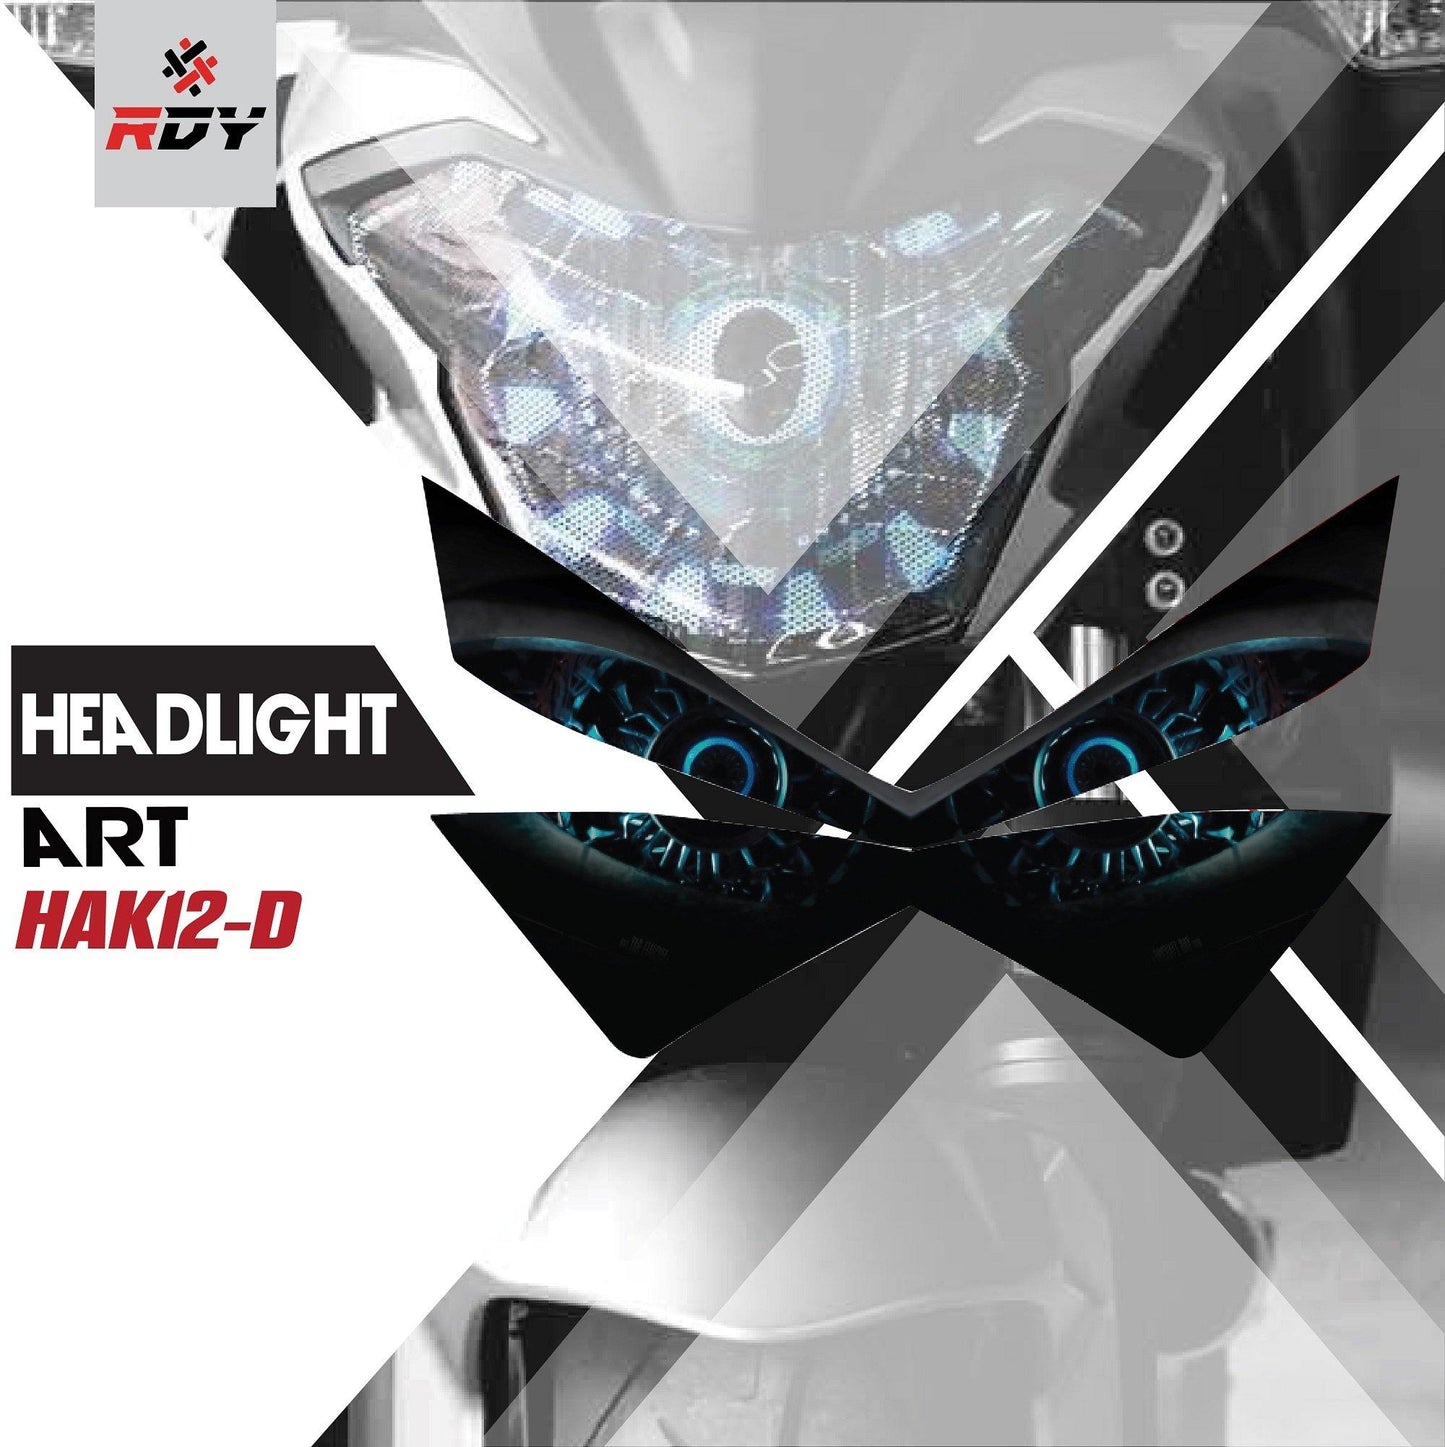 RDY Headlight Art fits for Kawasaki Z800 - Durian Bikers